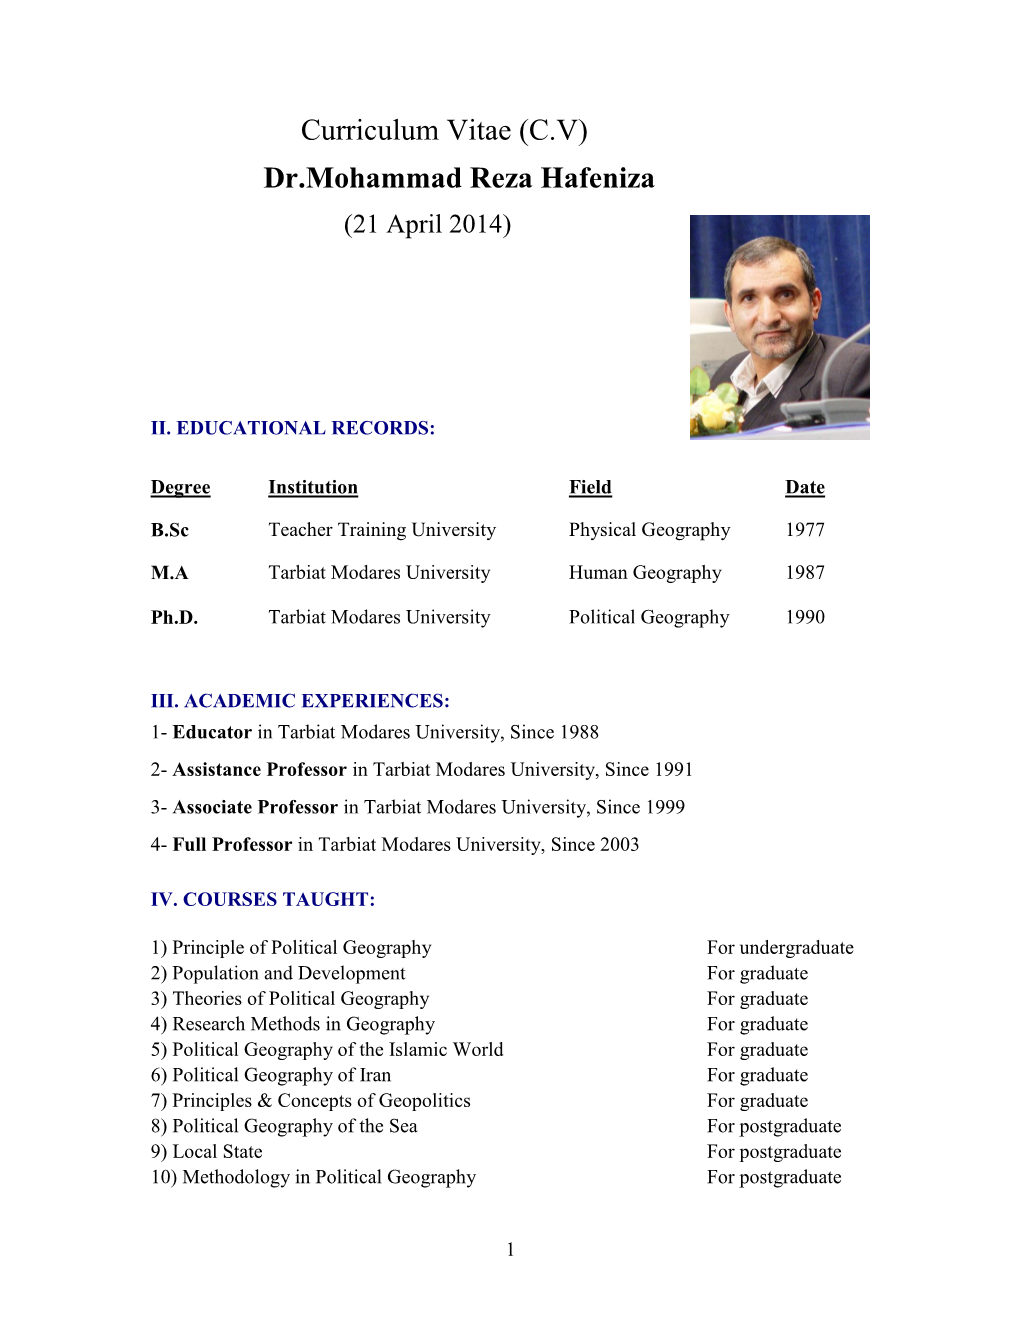 Curriculum Vitae (CV) Dr.Mohammad Reza Hafeniza